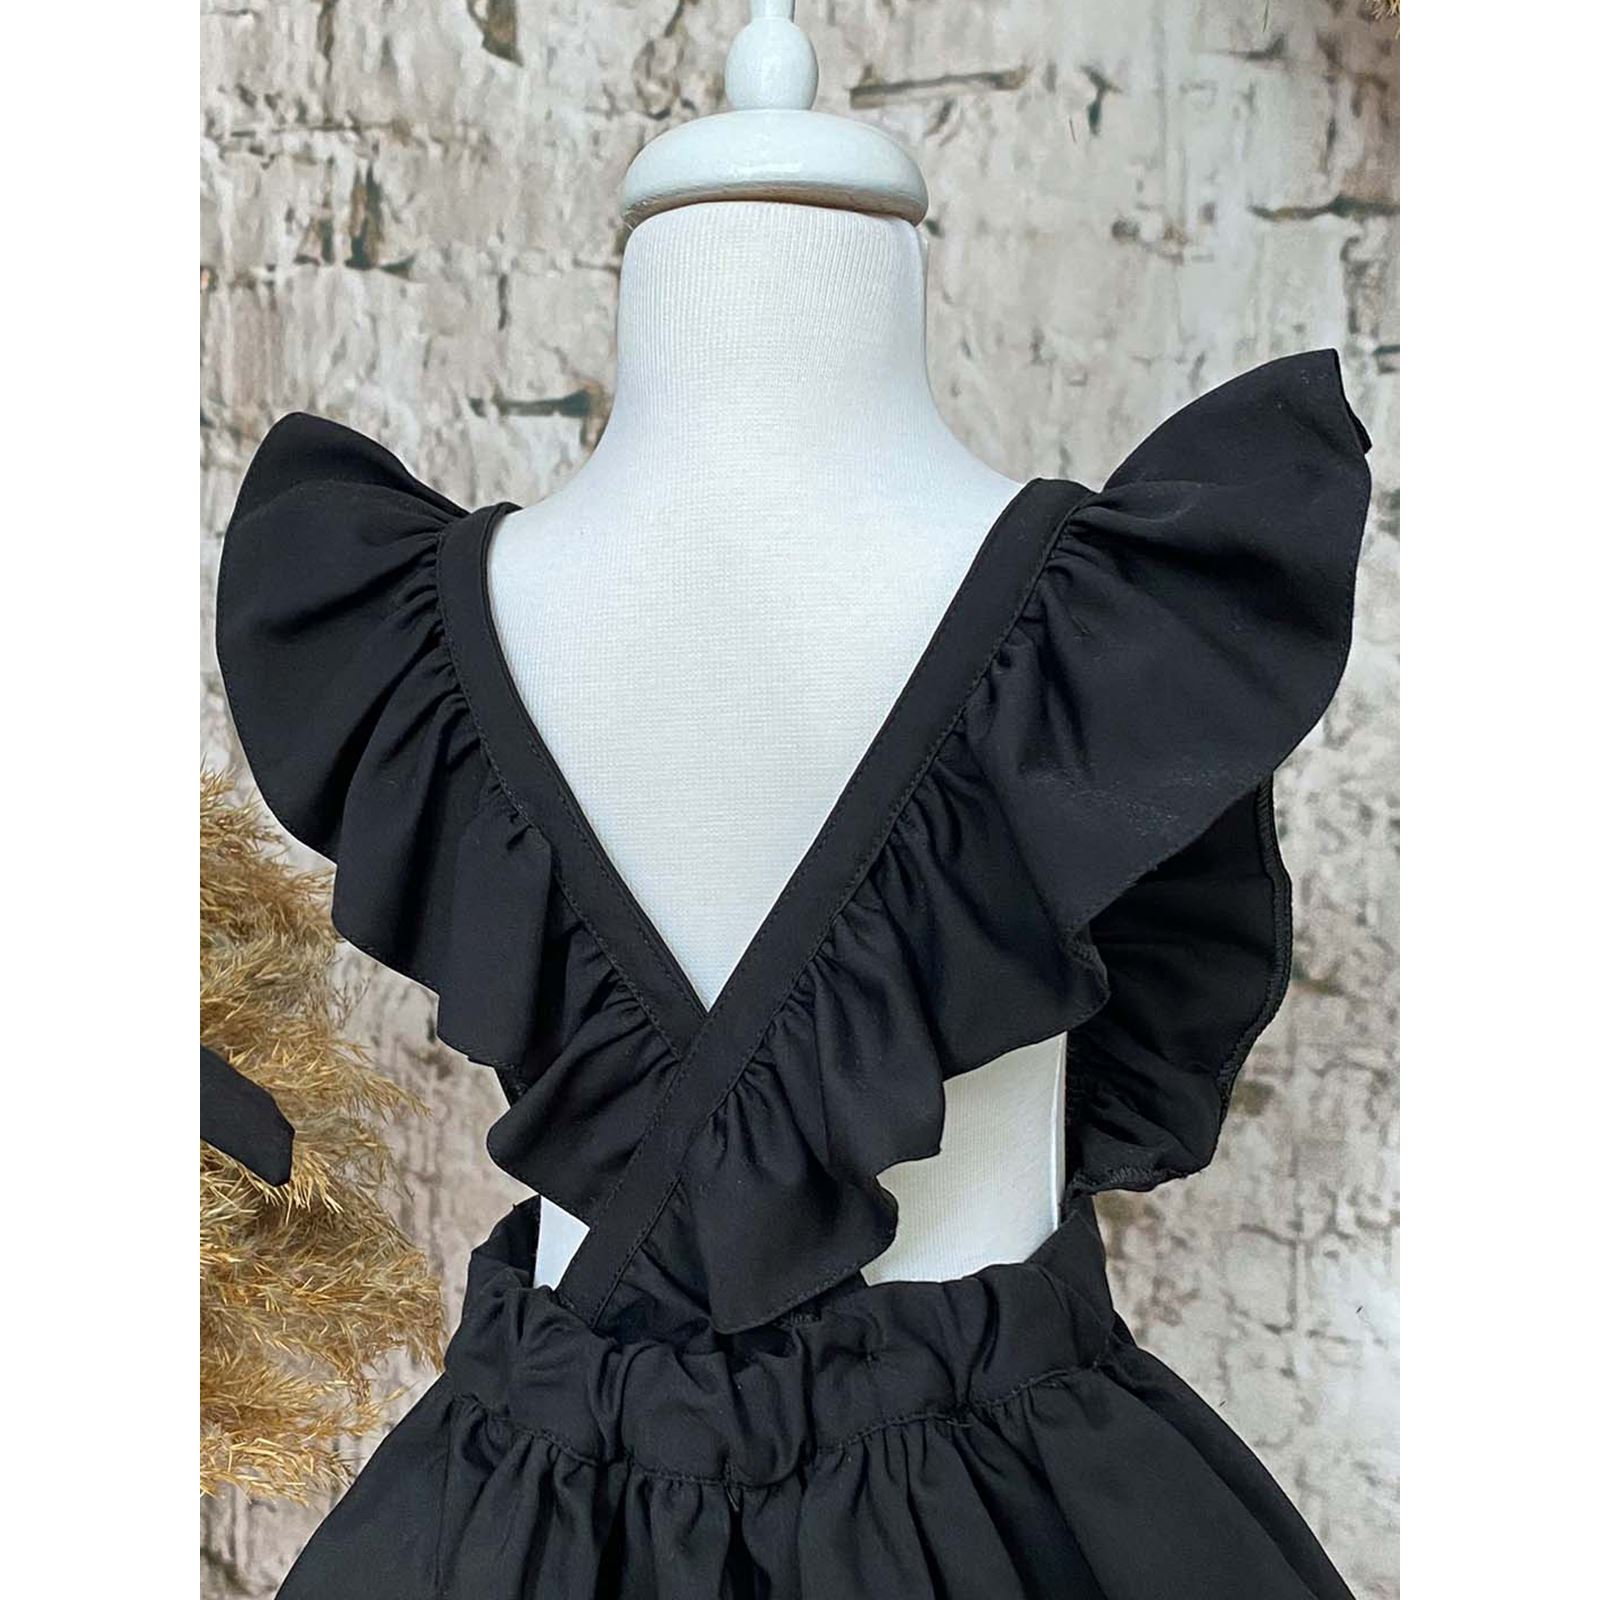 Shecco Babba Askıları Fırfırlı Kız Çocuk Elbise Bandana Takım 6-10 Yaş Siyah